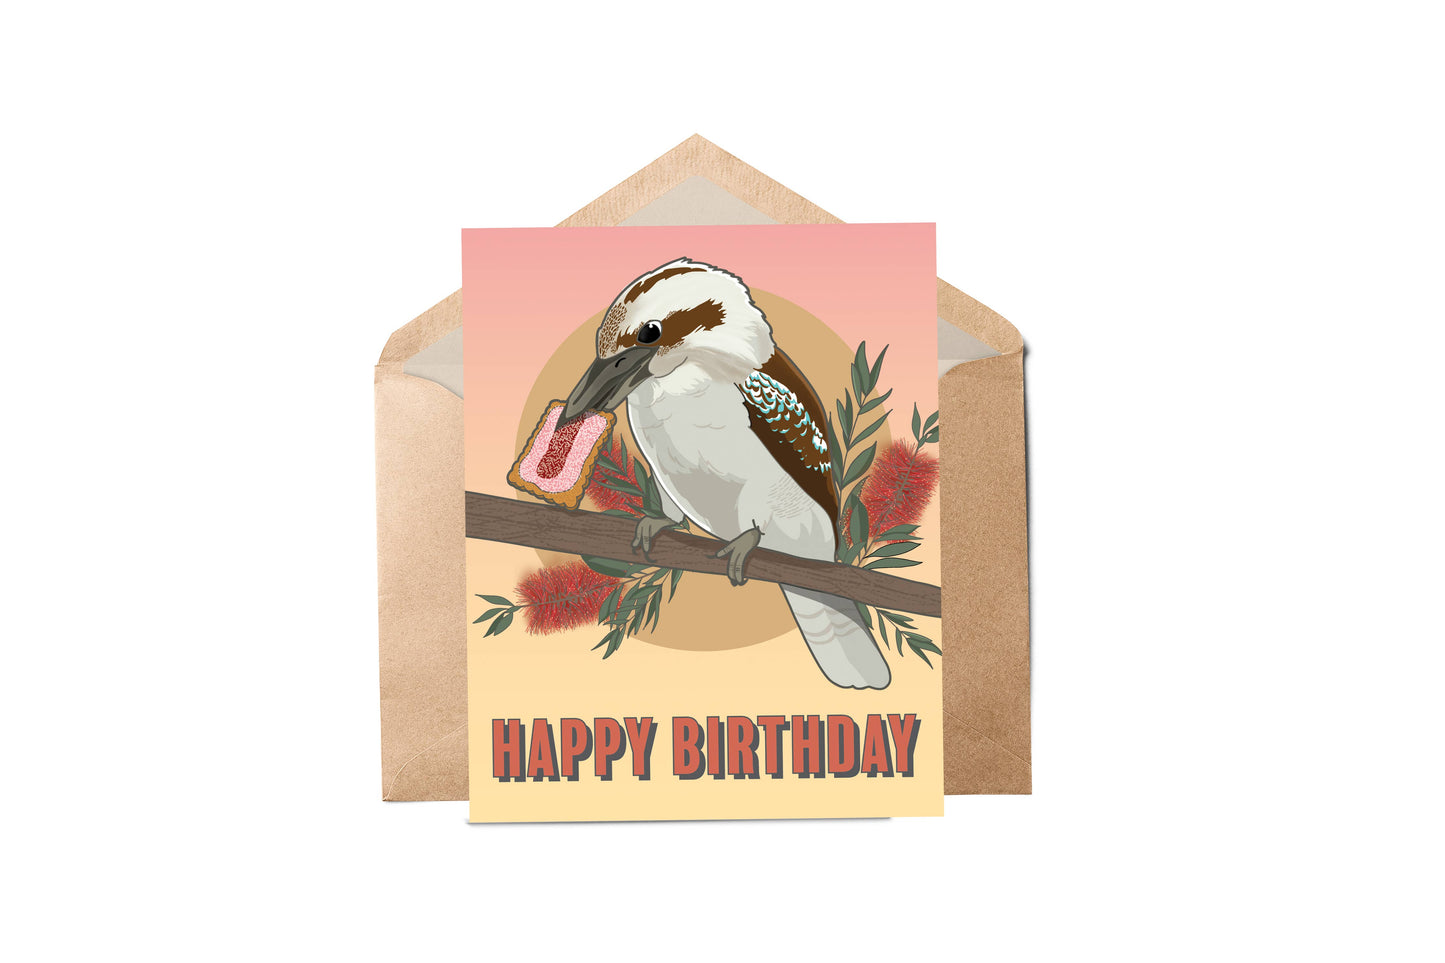 Kookaburra Birthday Card | Australian Greeting Card